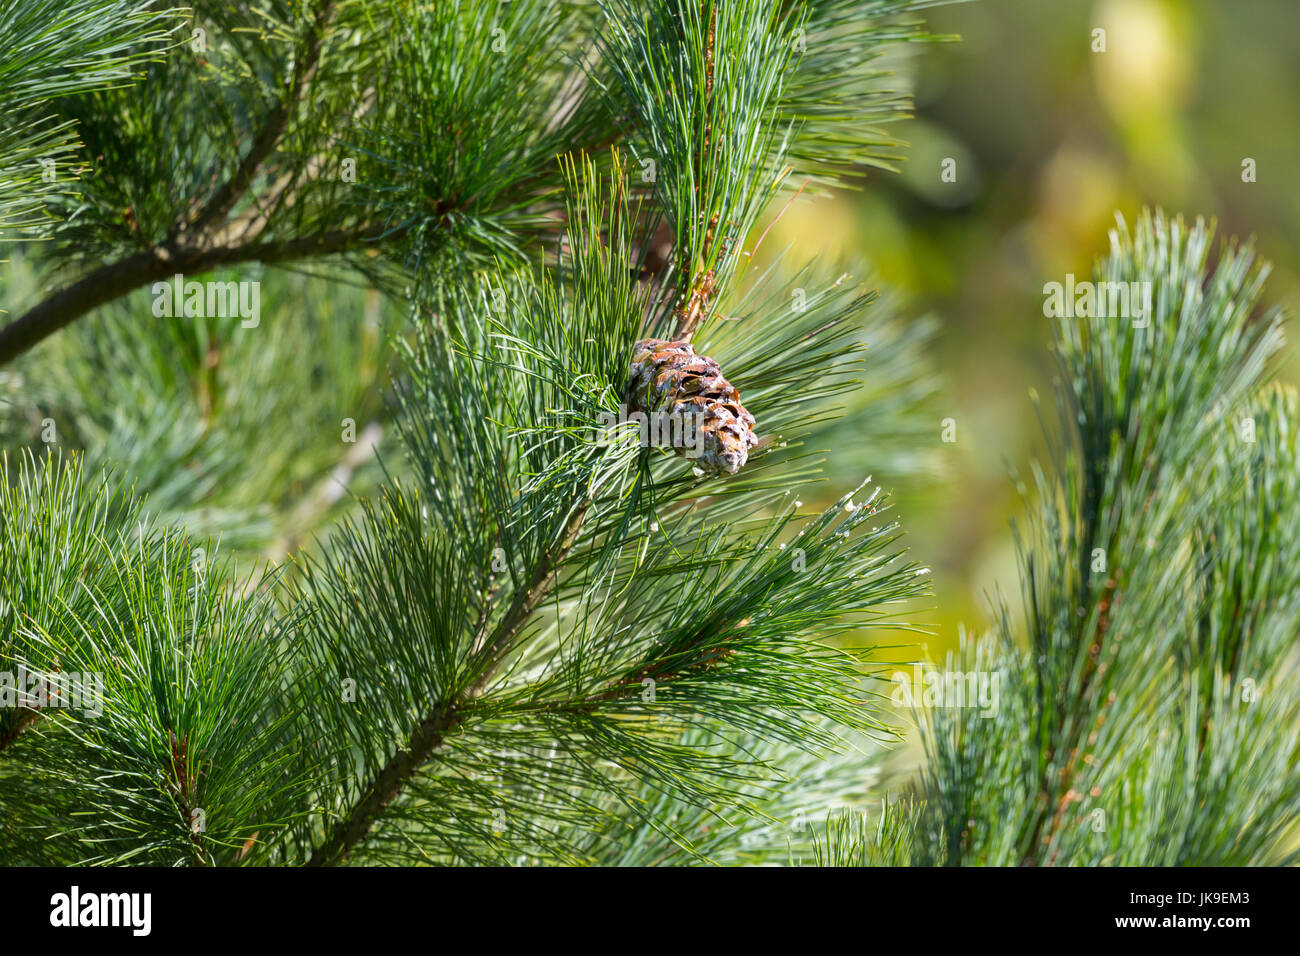 Eastern white pine cone, northern white pine, white pine, Weymouth pine (British), soft pine, Poland, Europe Stock Photo